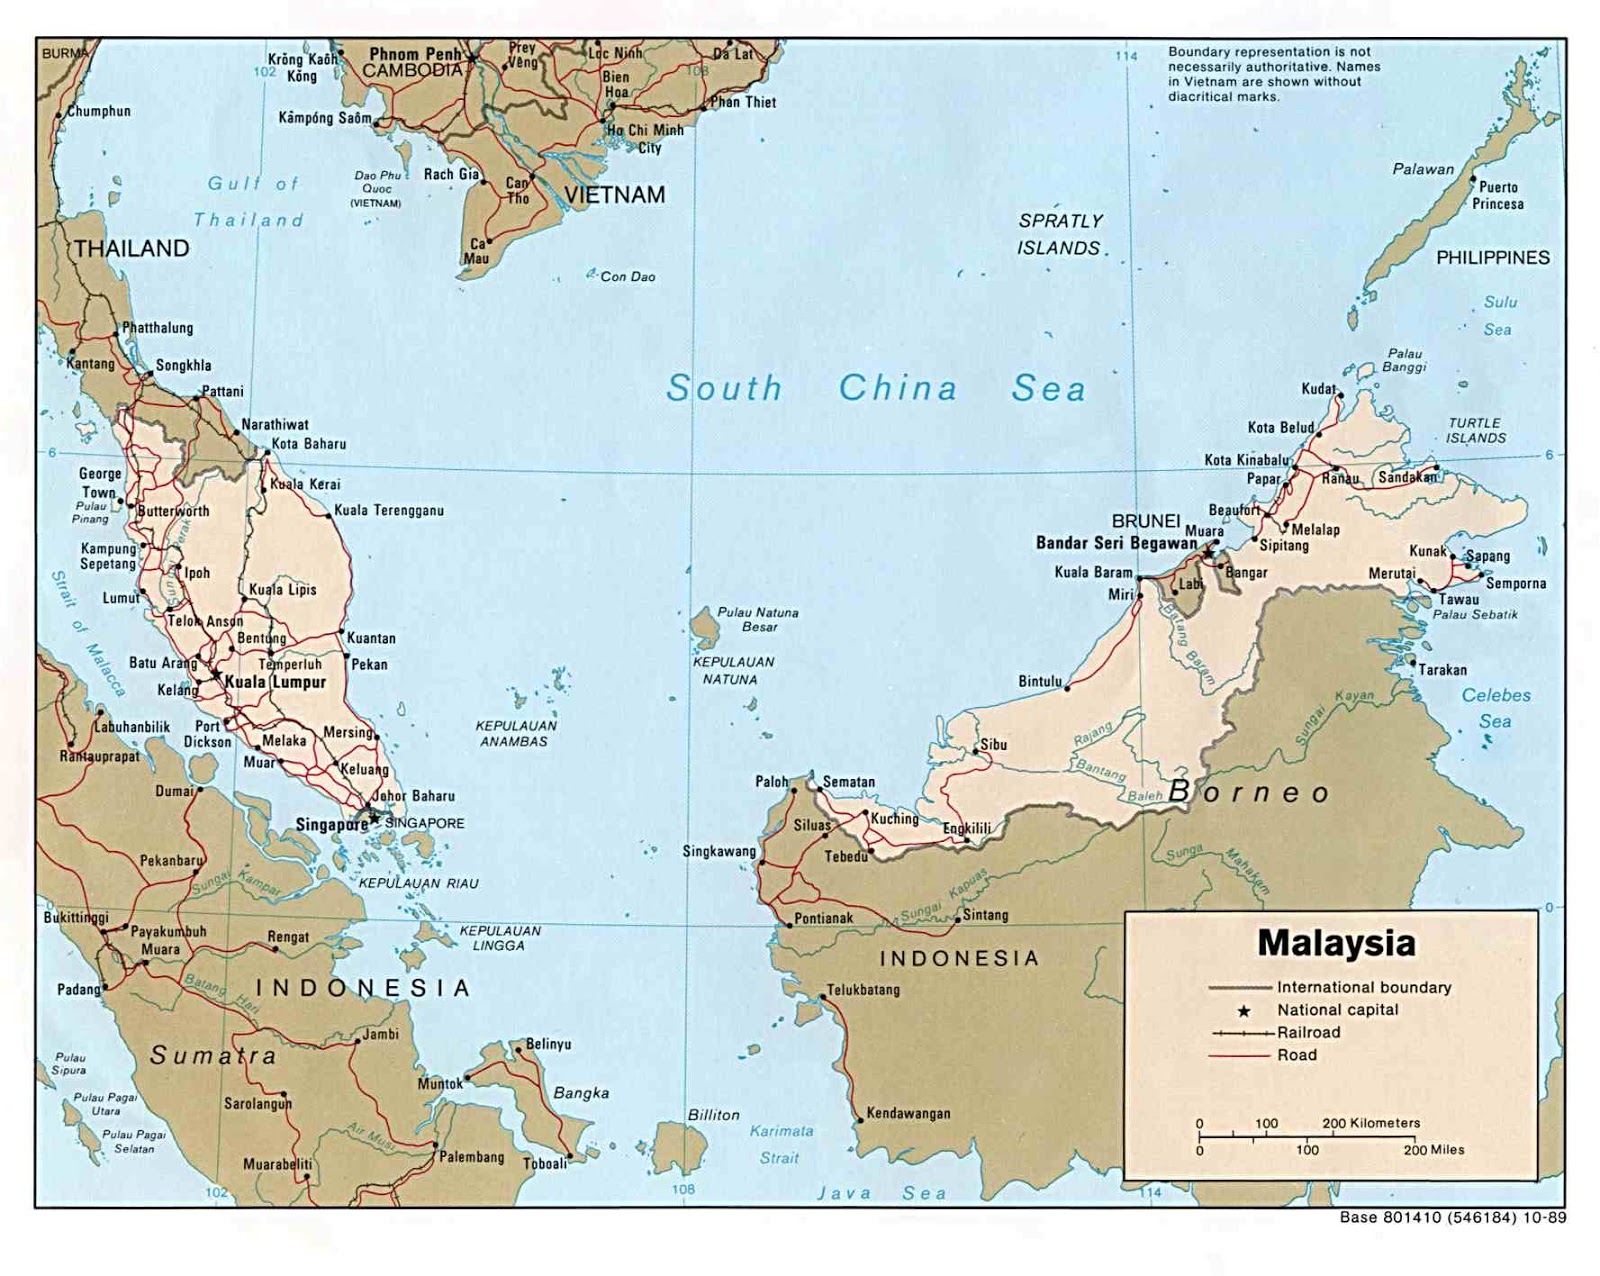 MALAYSIA (4) 